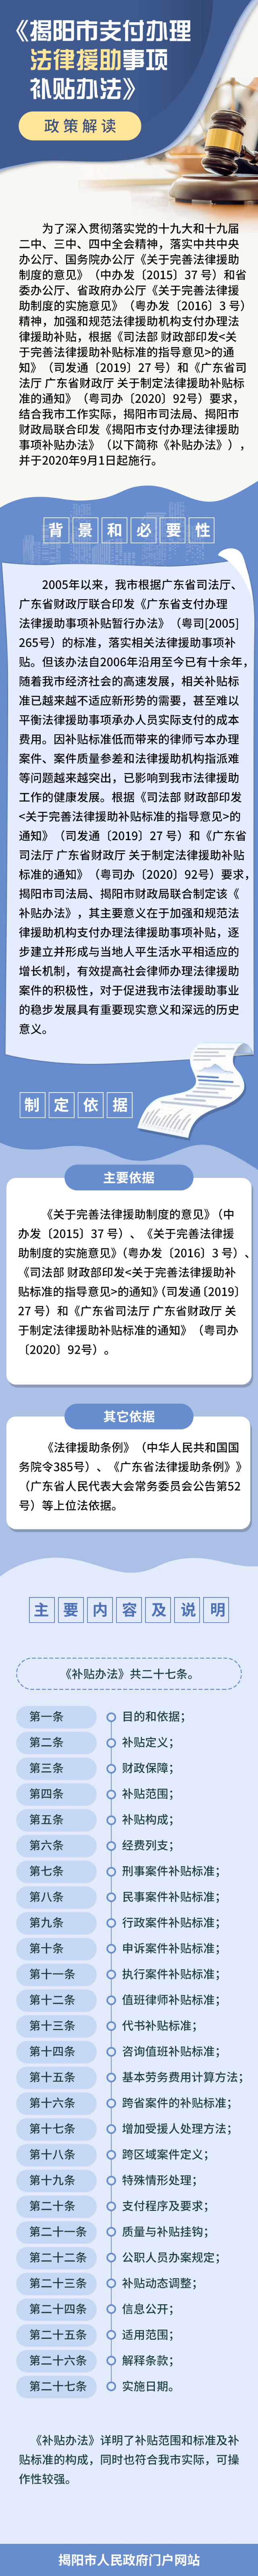 揭阳市支付办理法律援助事项补贴办法1.png